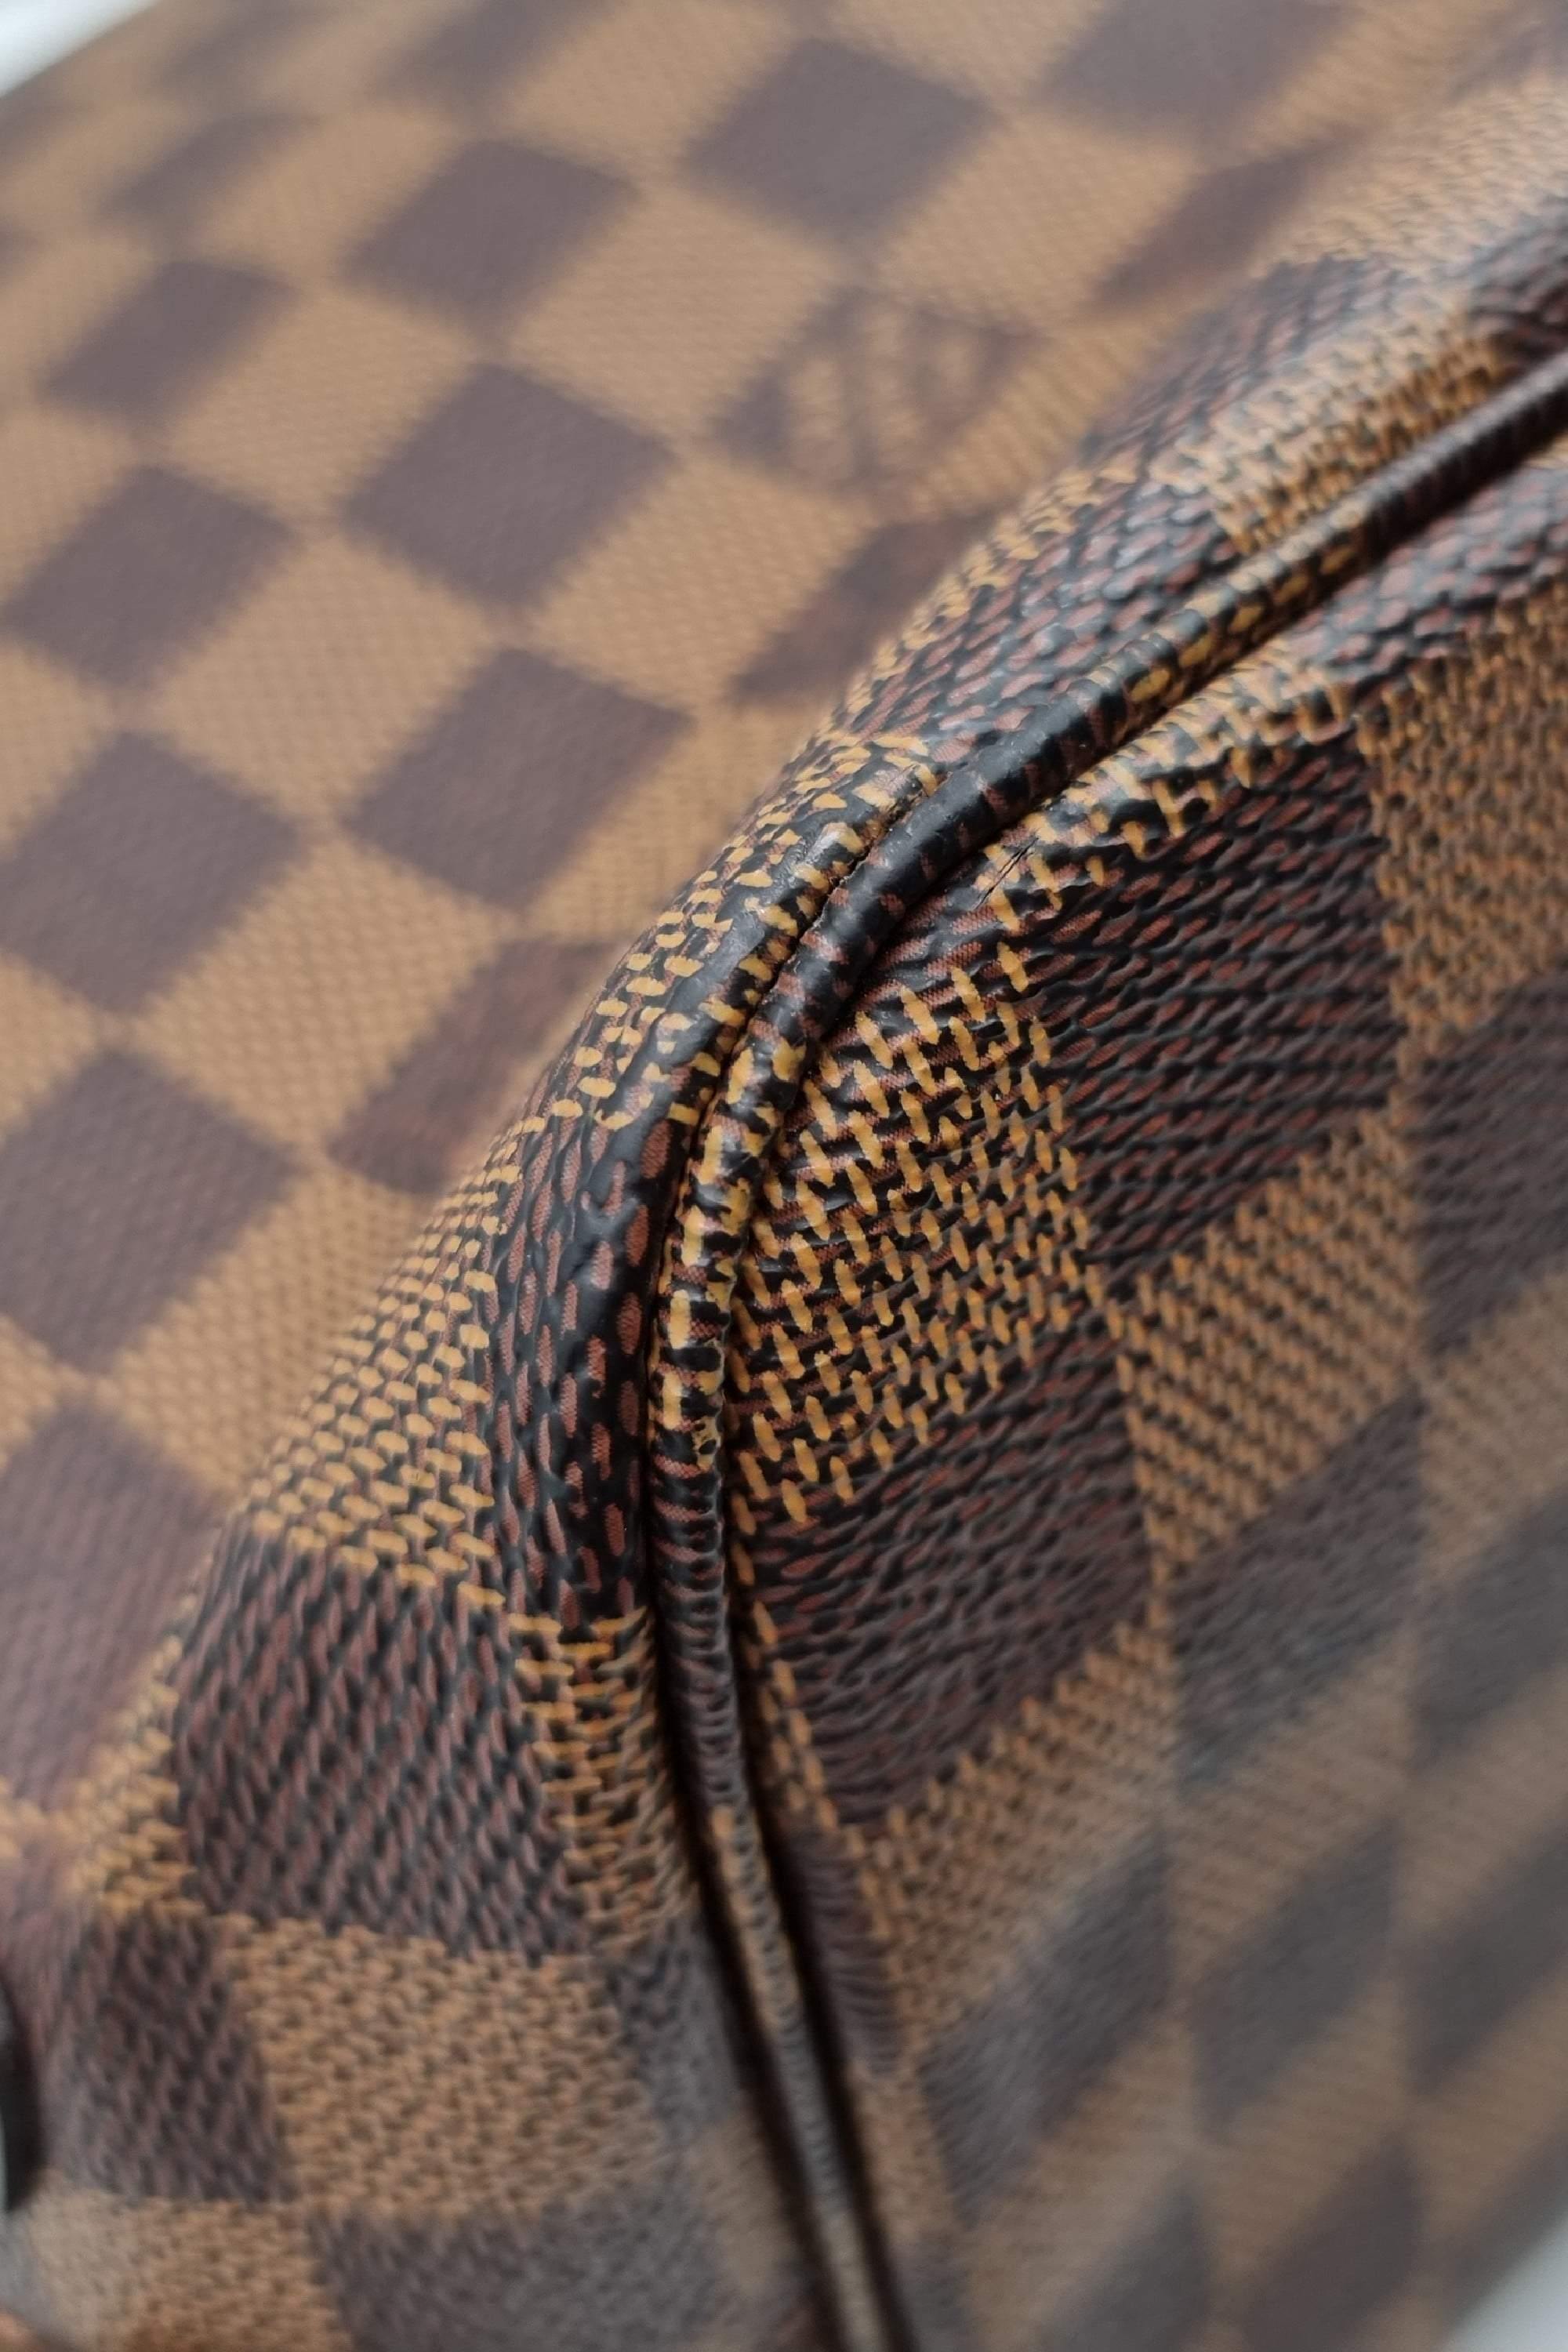 Authentic Louis Vuitton Damier Ebene Cabas Rivington GM Tote Bag – Paris  Station Shop